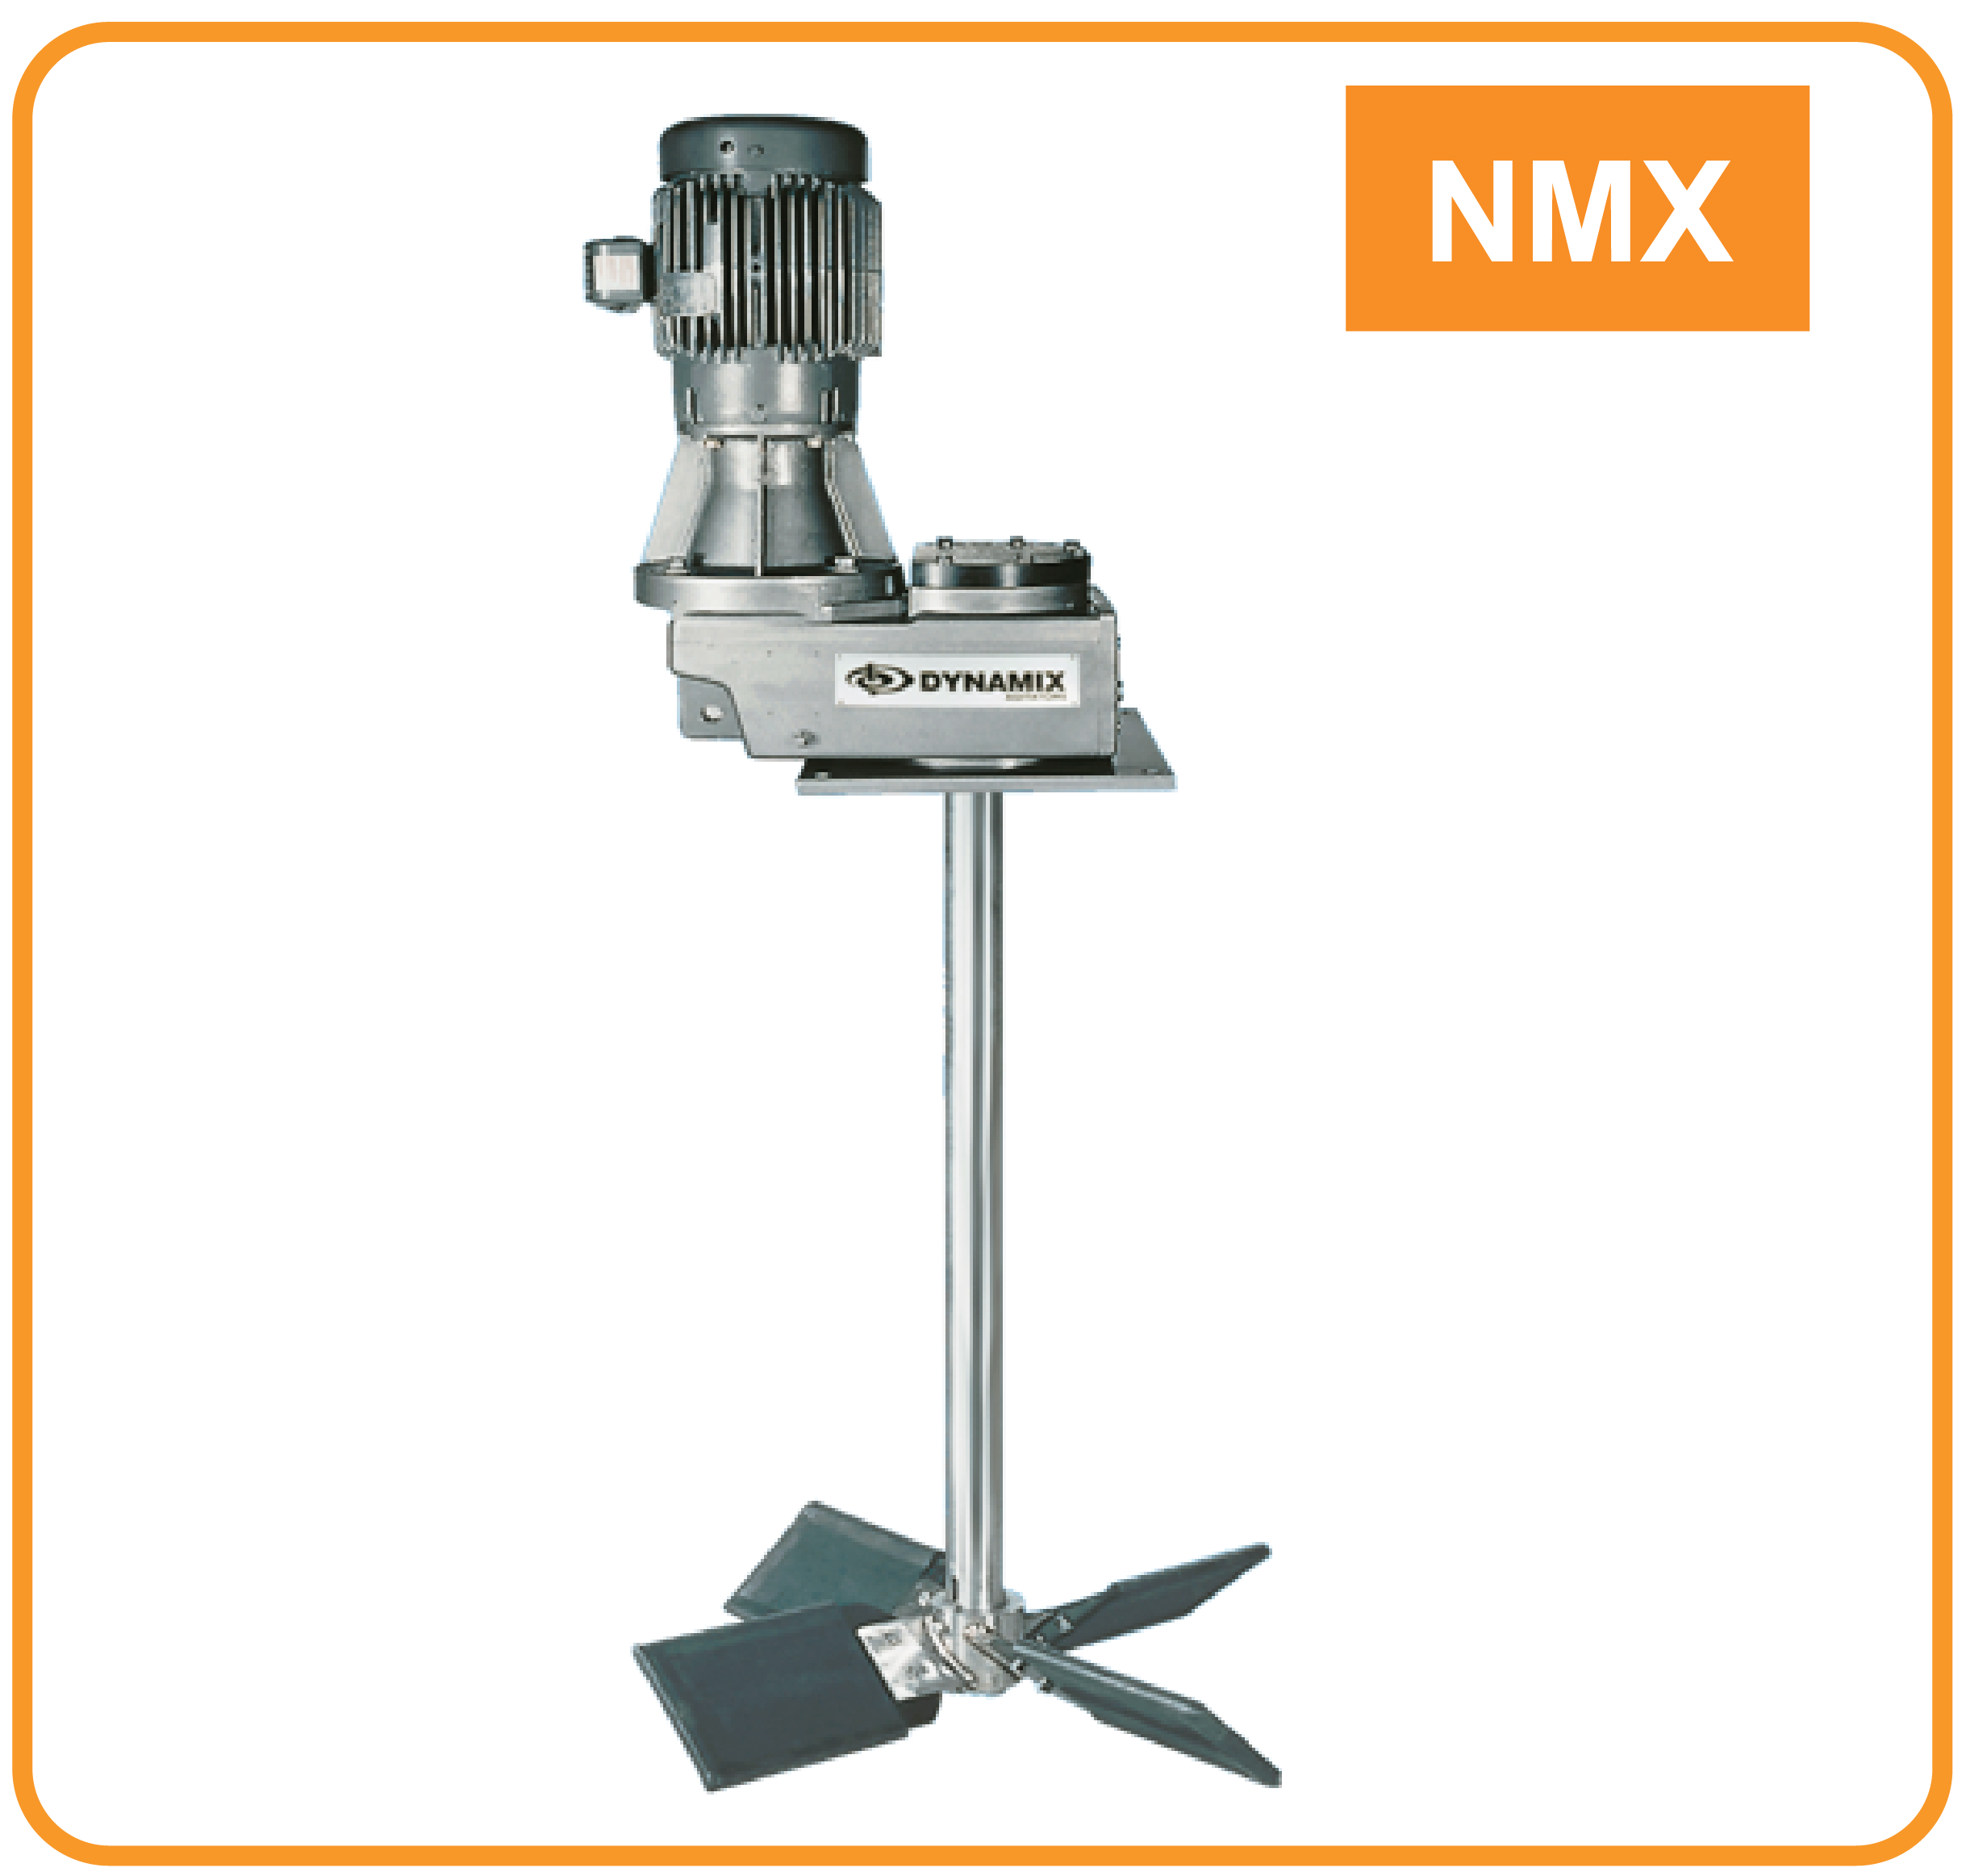 nmx industrial mixer